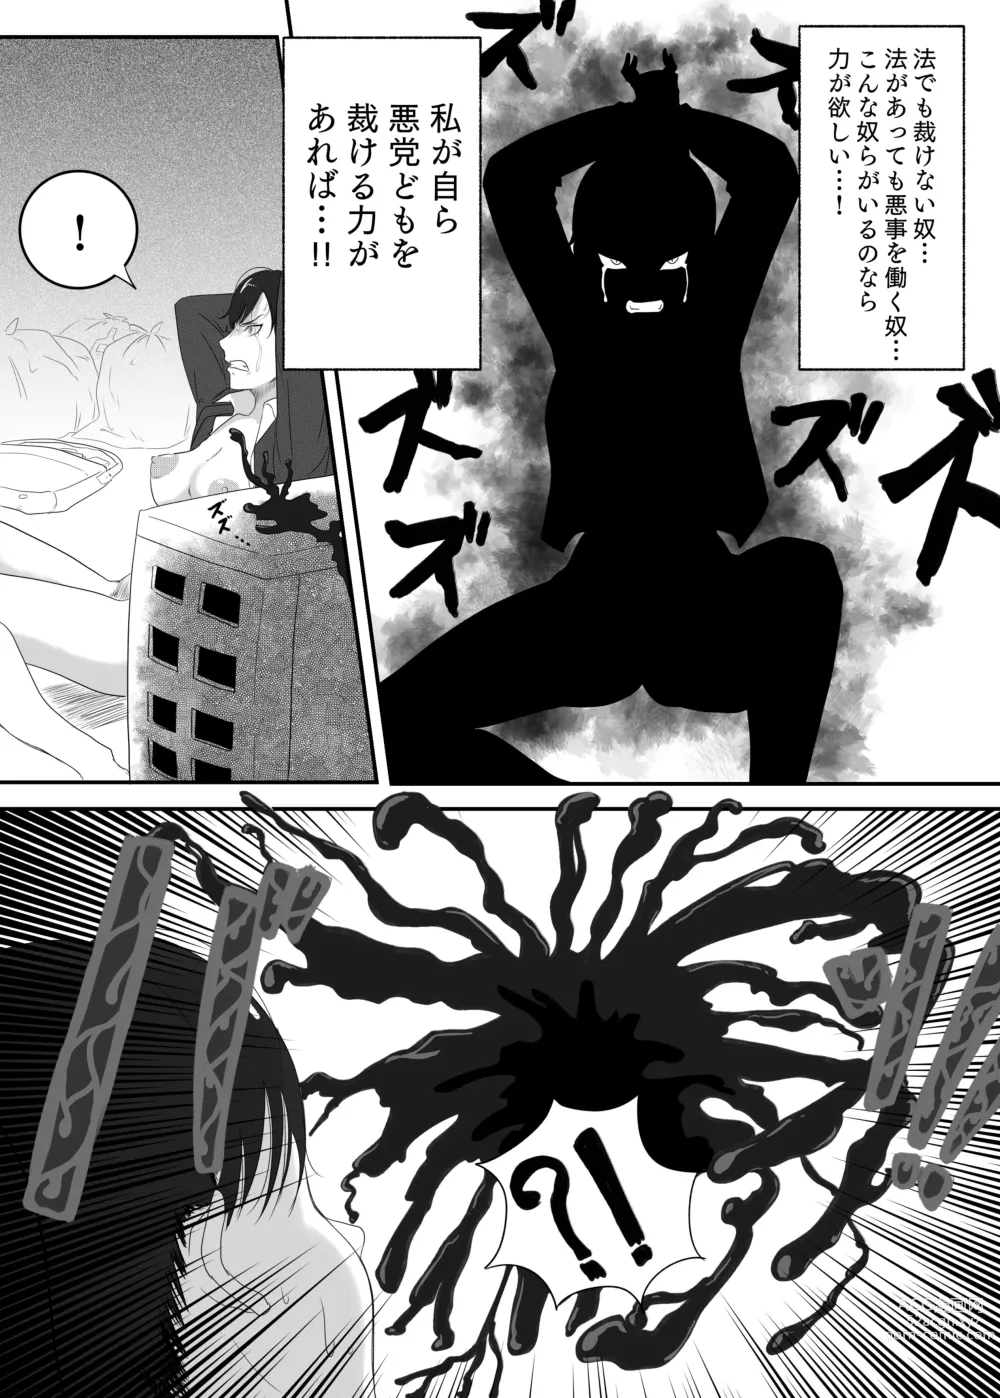 Page 9 of doujinshi Kuro no shinshoku～Black Venom～